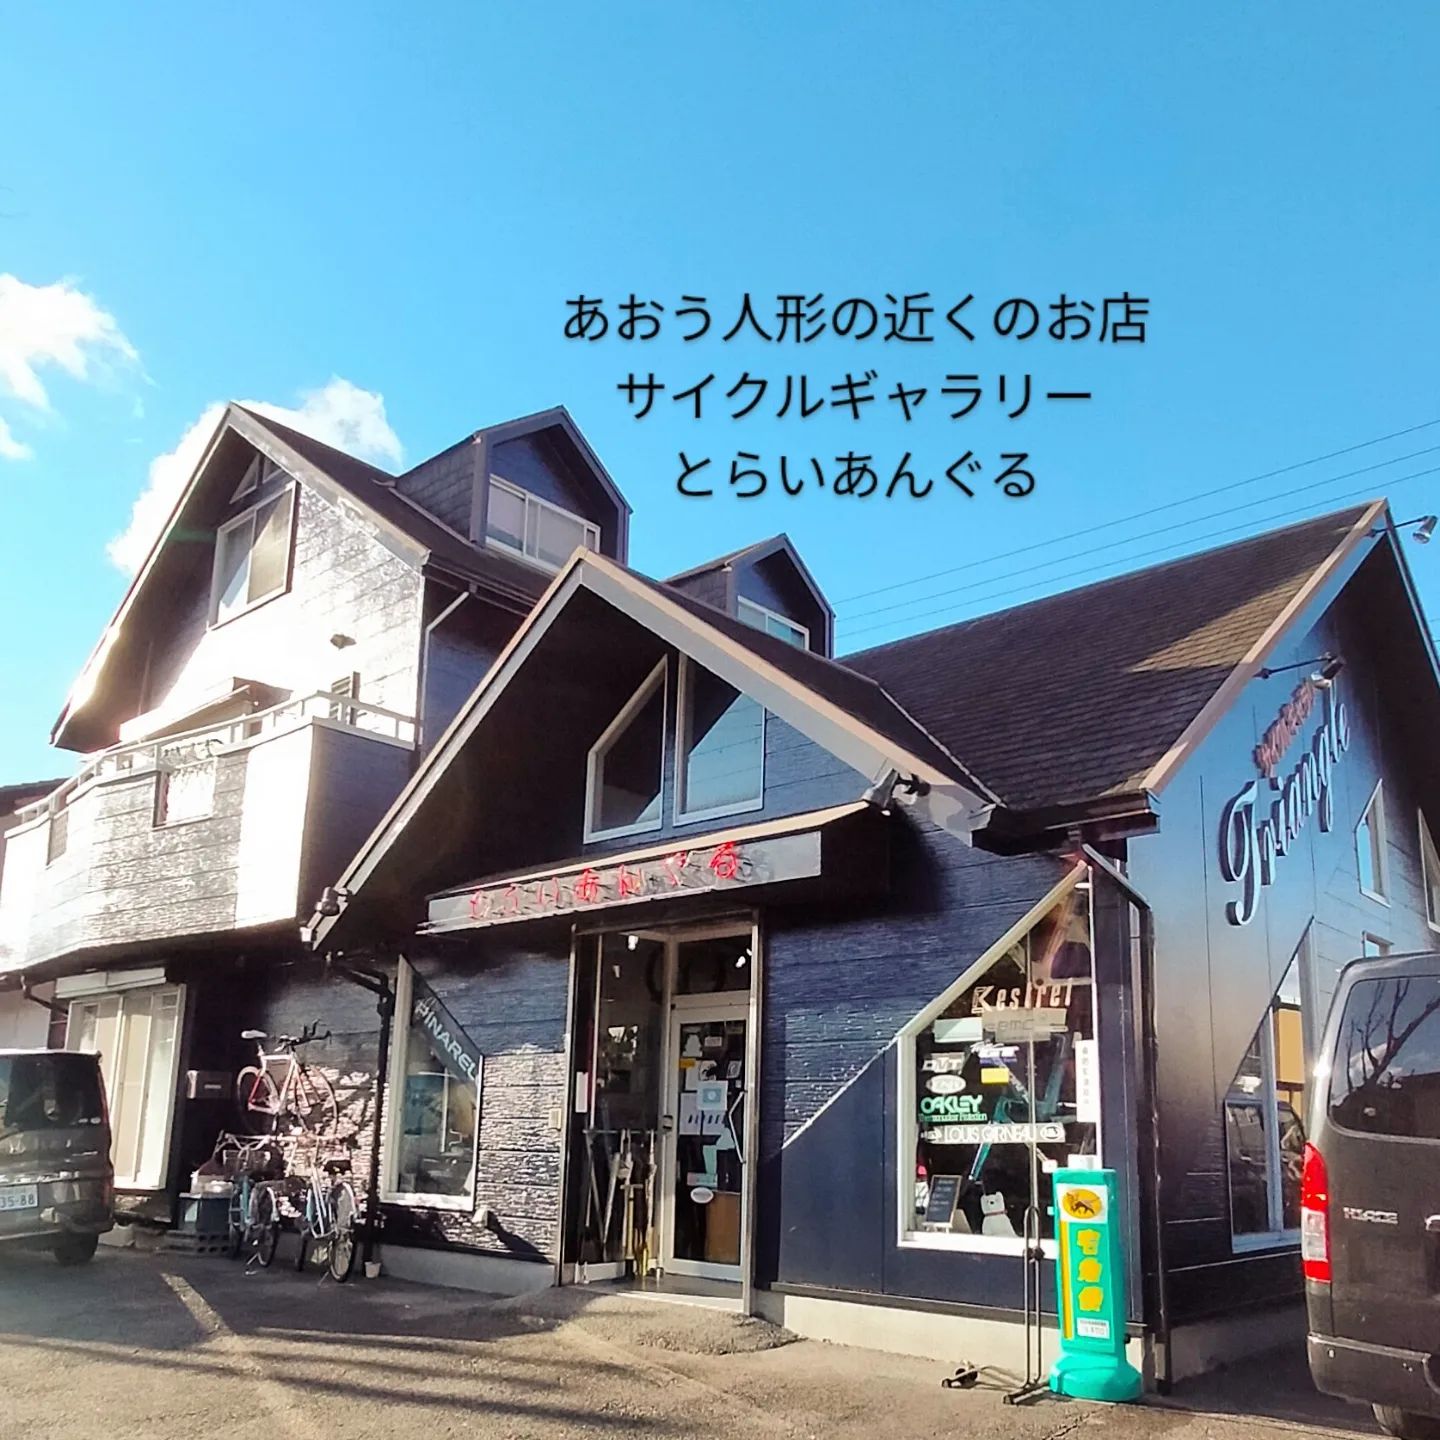 愛知県岡崎市の人形店、あおう人形はサイクルギャラリーとらいあんぐるから約1分です- from Instagram